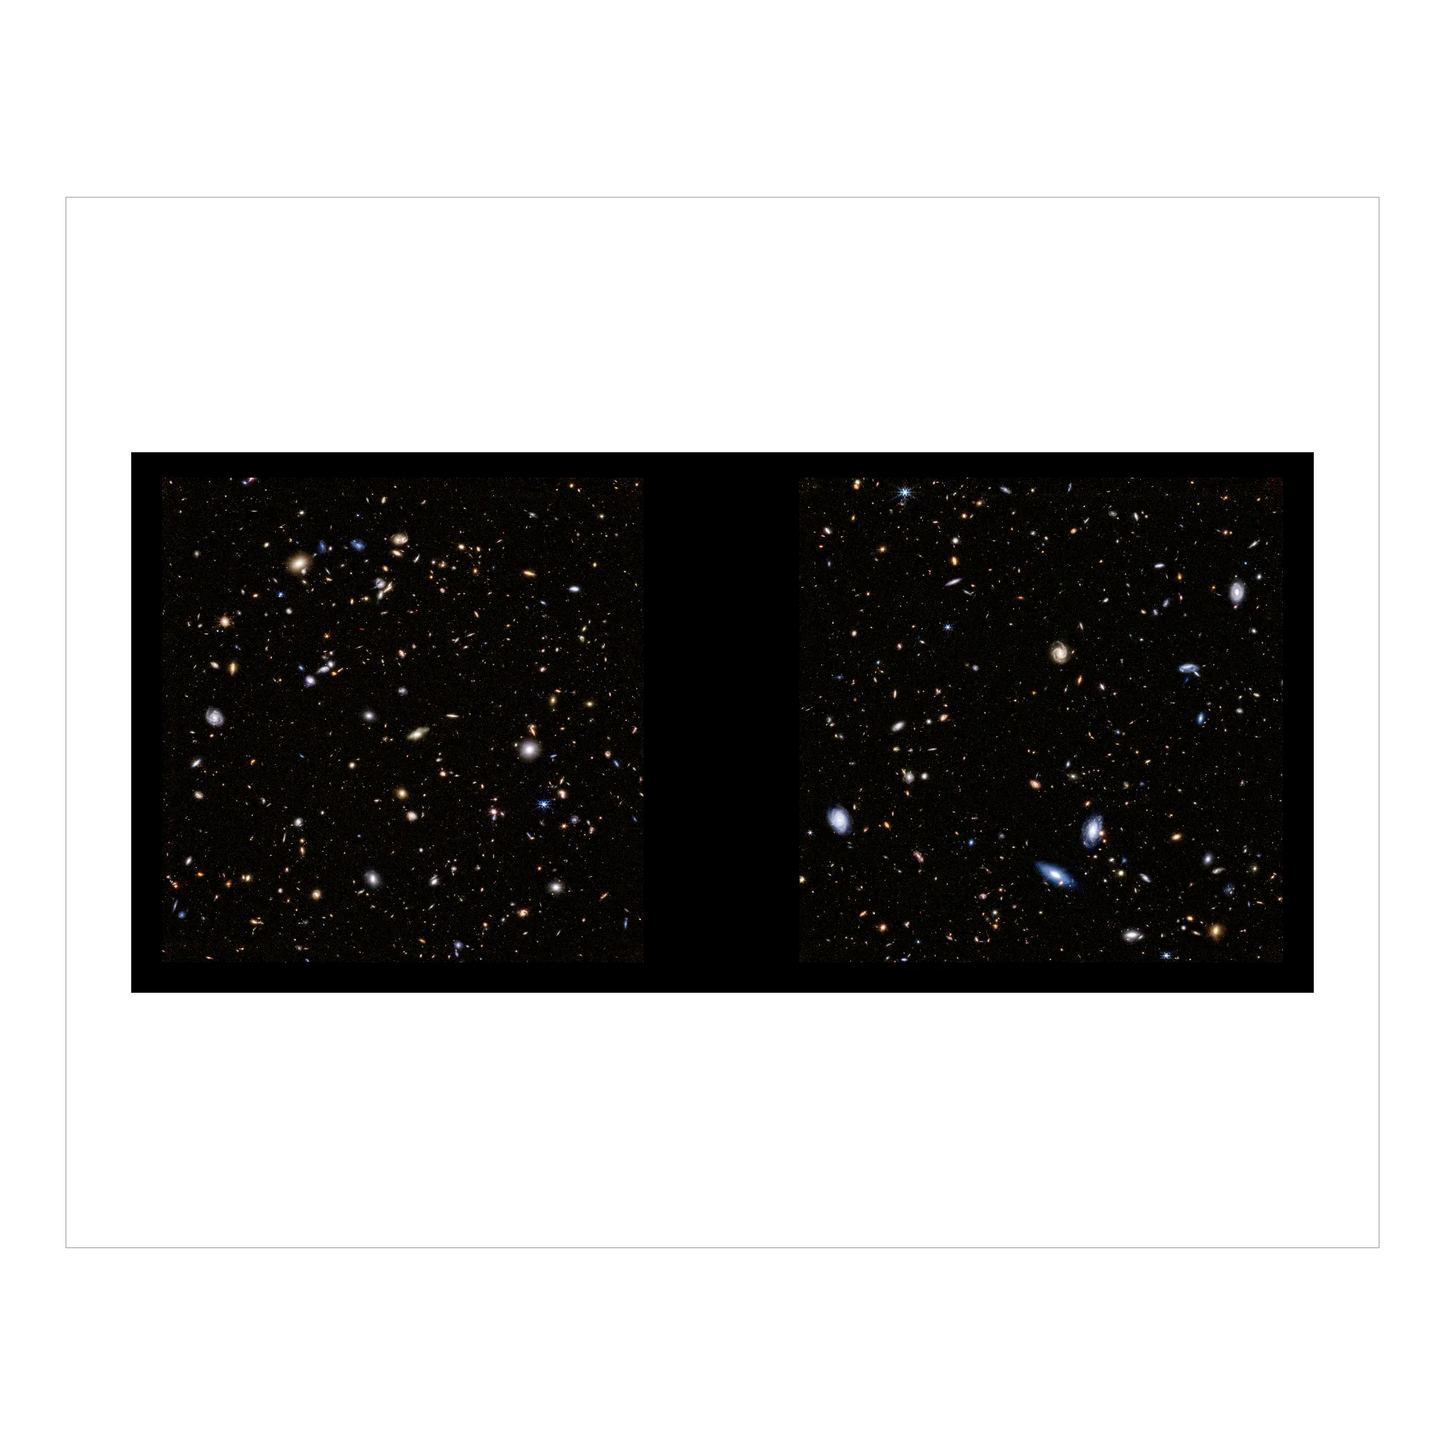 Webb Observations of Hubble Ultra Deep Field (Full Field)